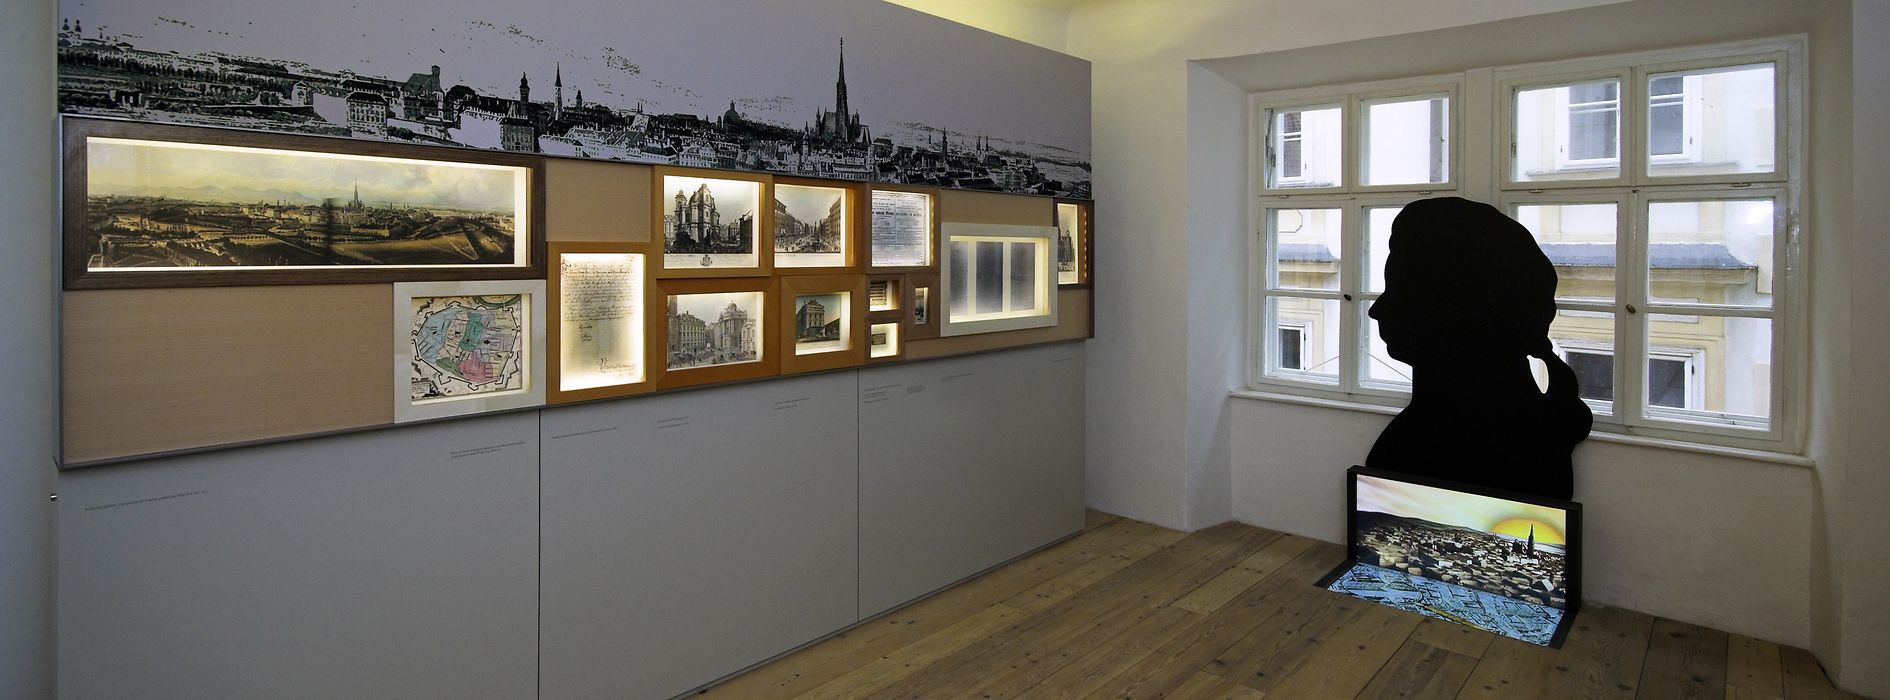 Ausstellungsraum im Mozarthaus